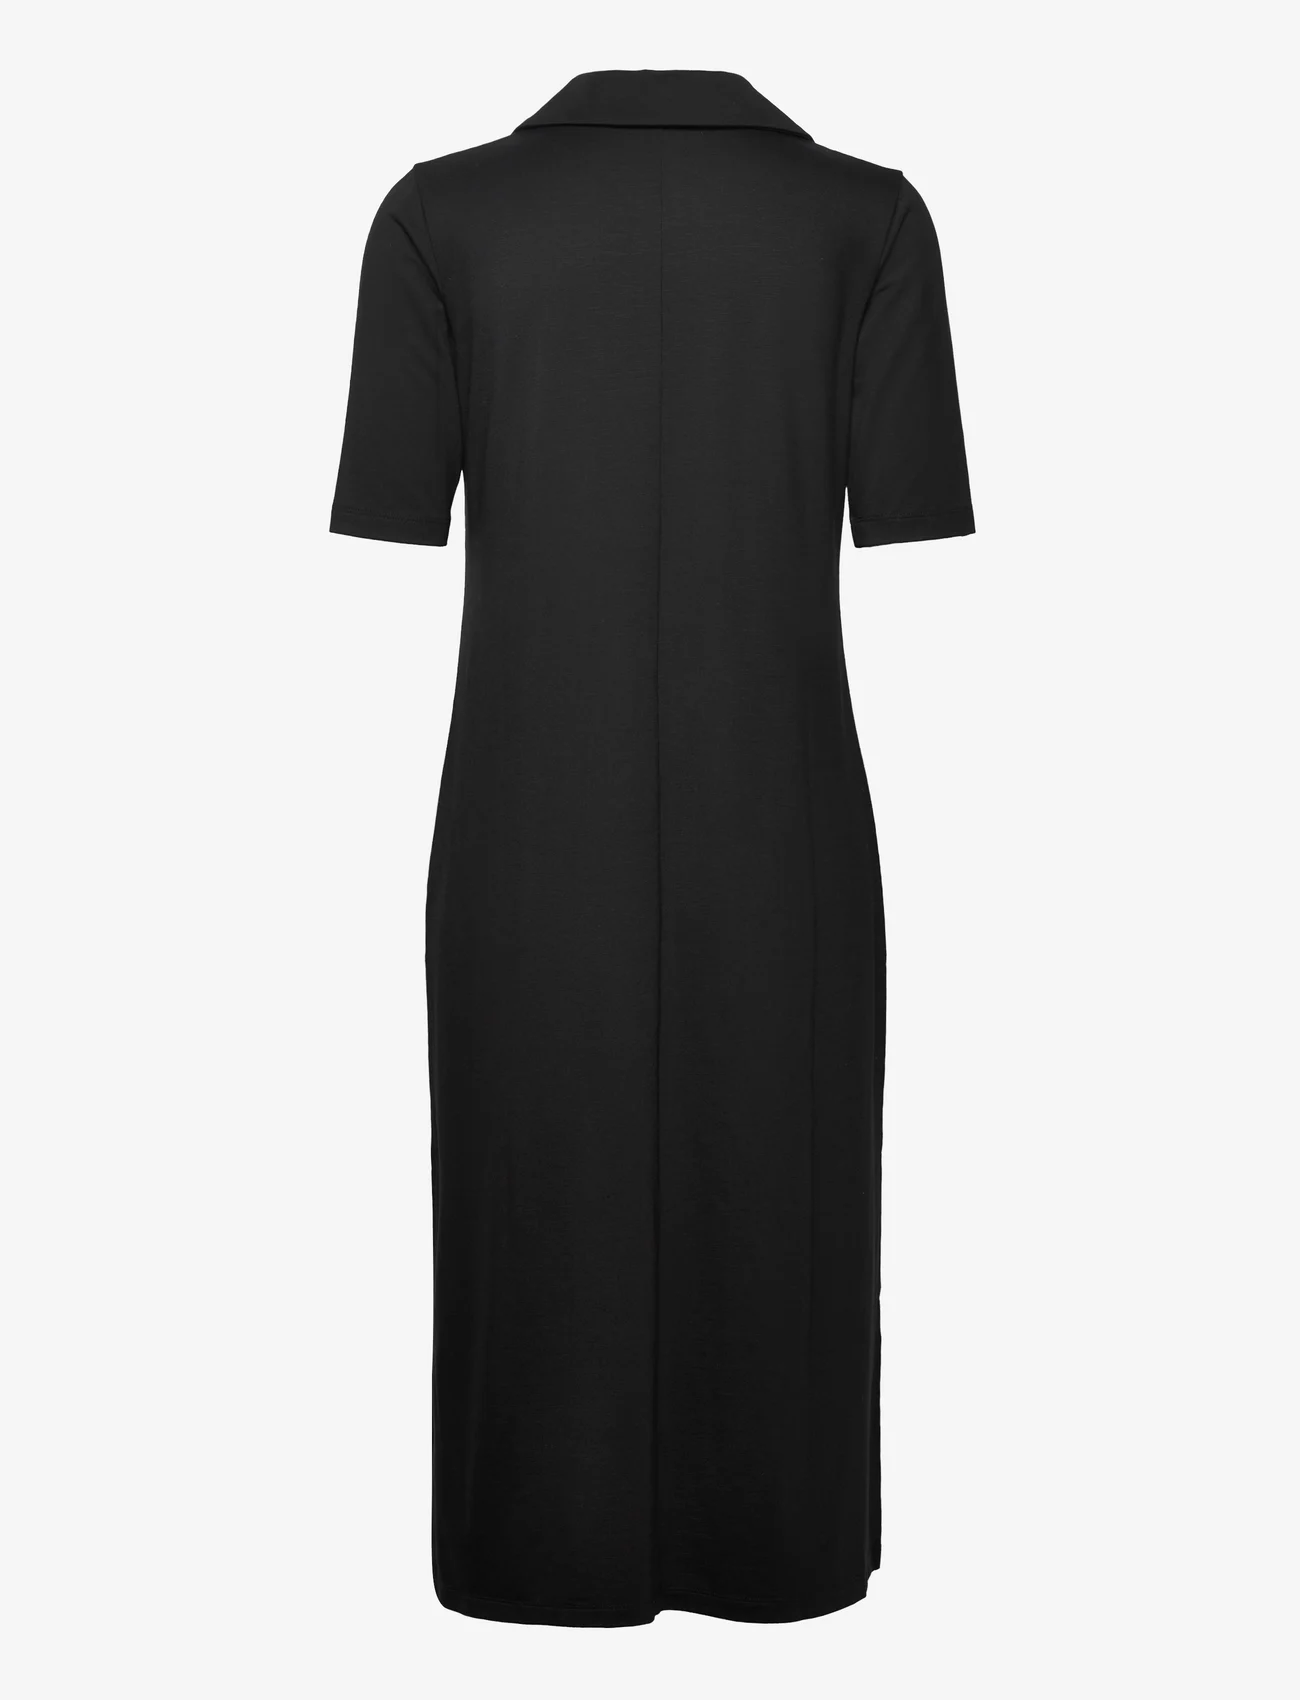 Residus - TOBEI DRESS - knitted dresses - black - 1